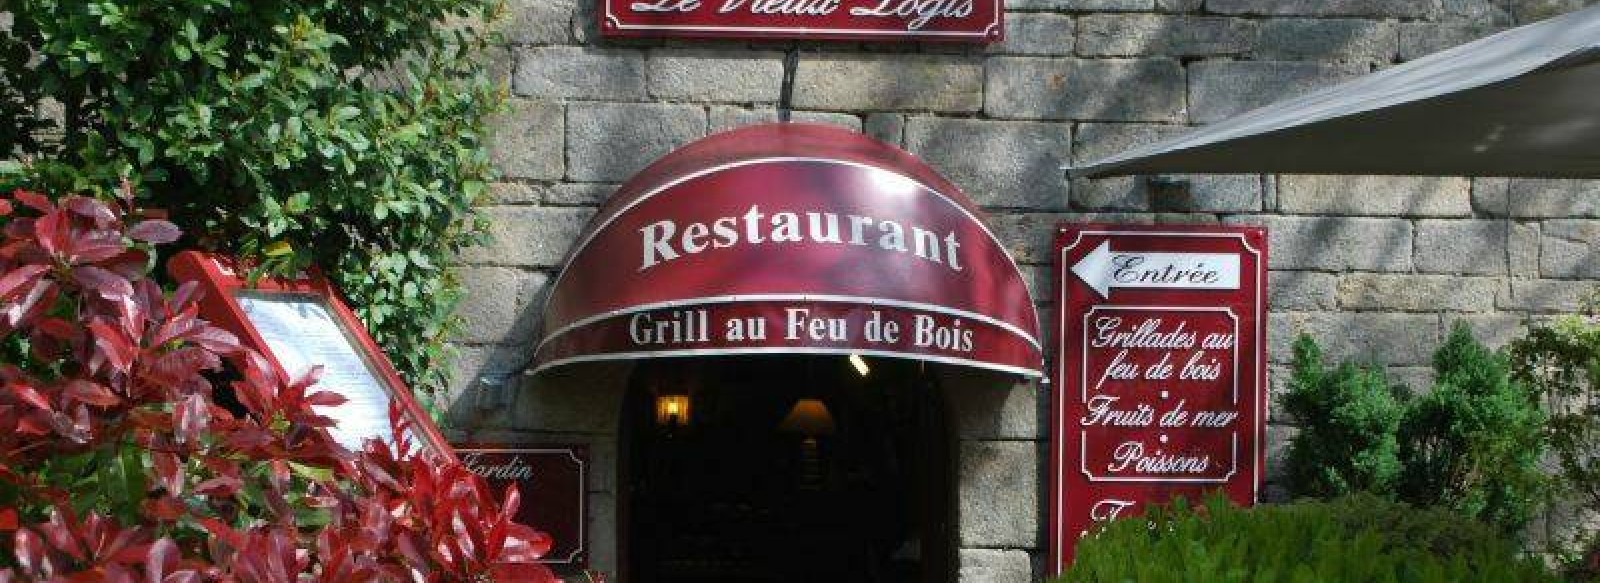 Restaurant Le Vieux Logis